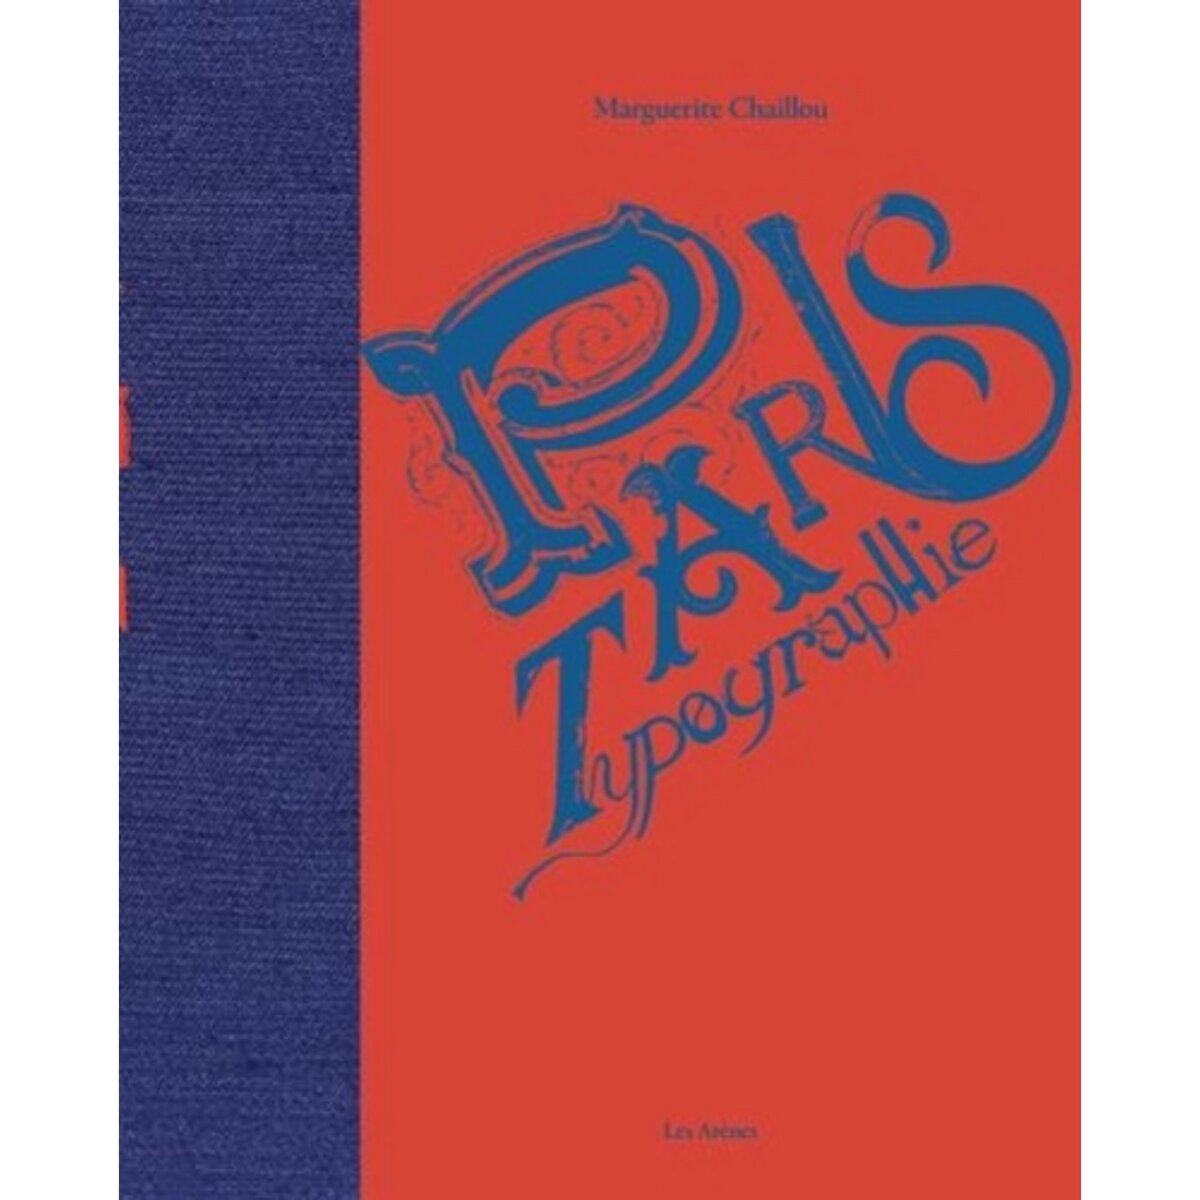  PARIS TYPOGRAPHIES, Chaillou Marguerite